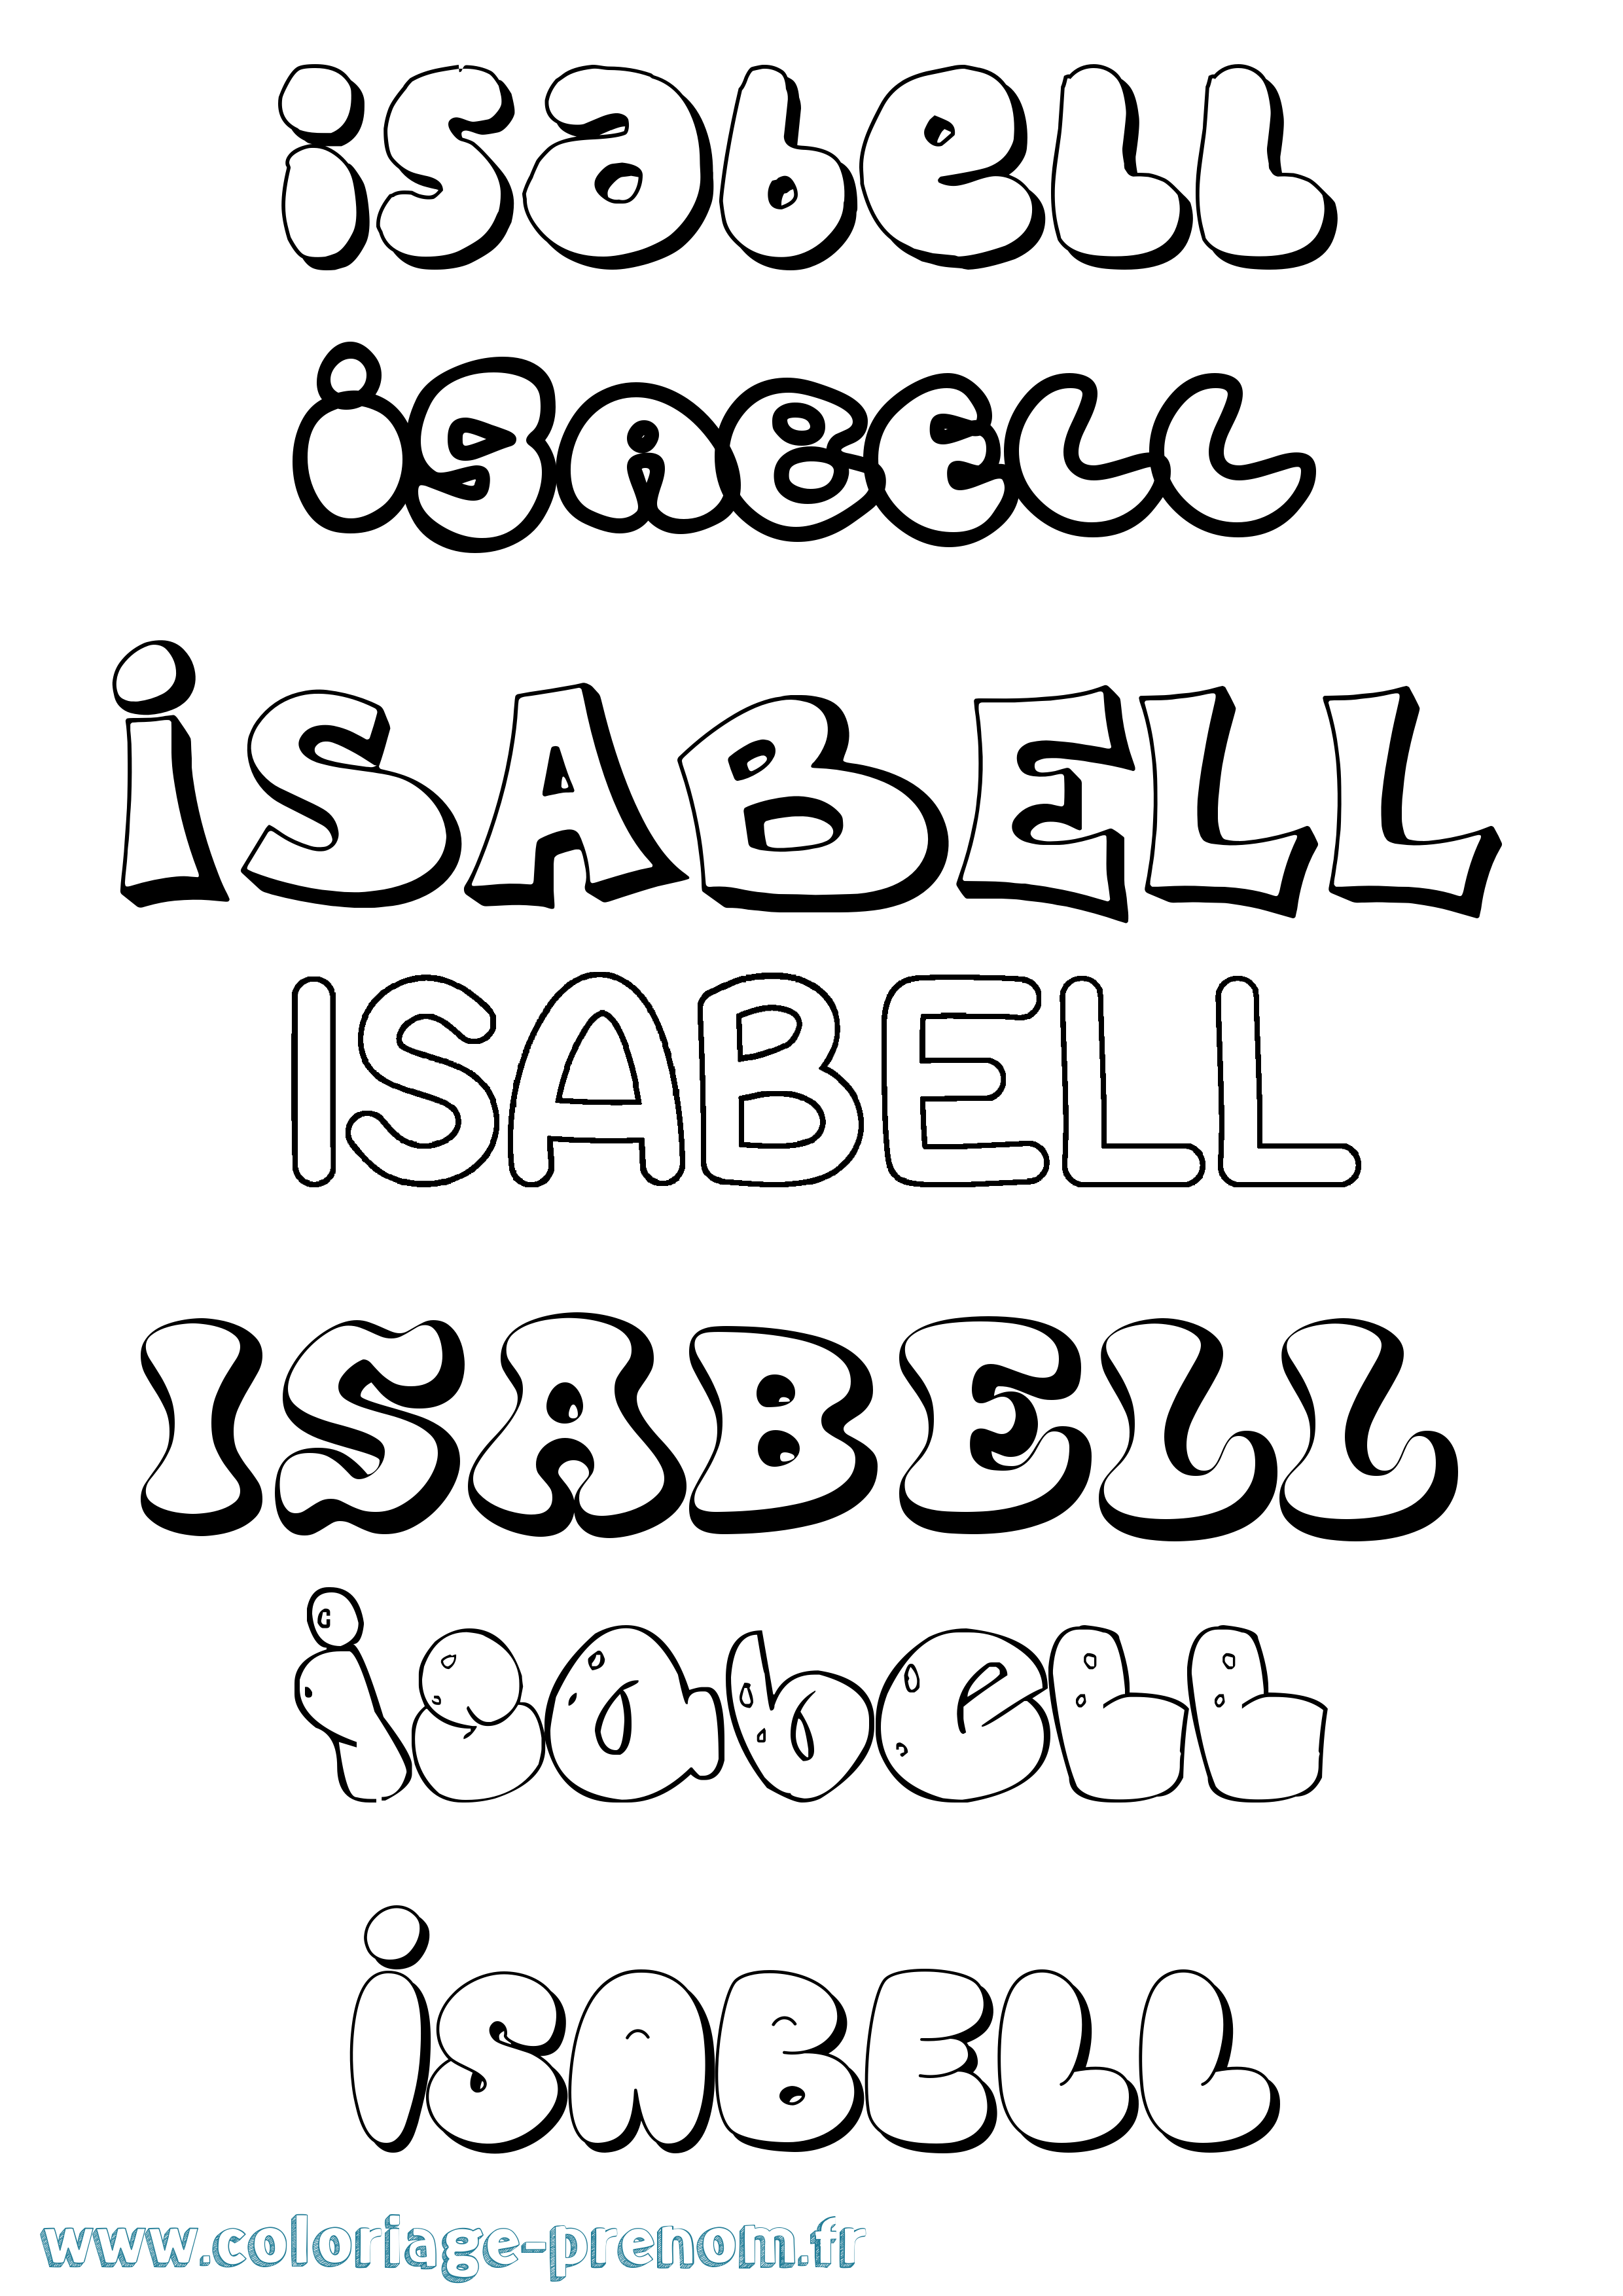 Coloriage prénom Isabell Bubble